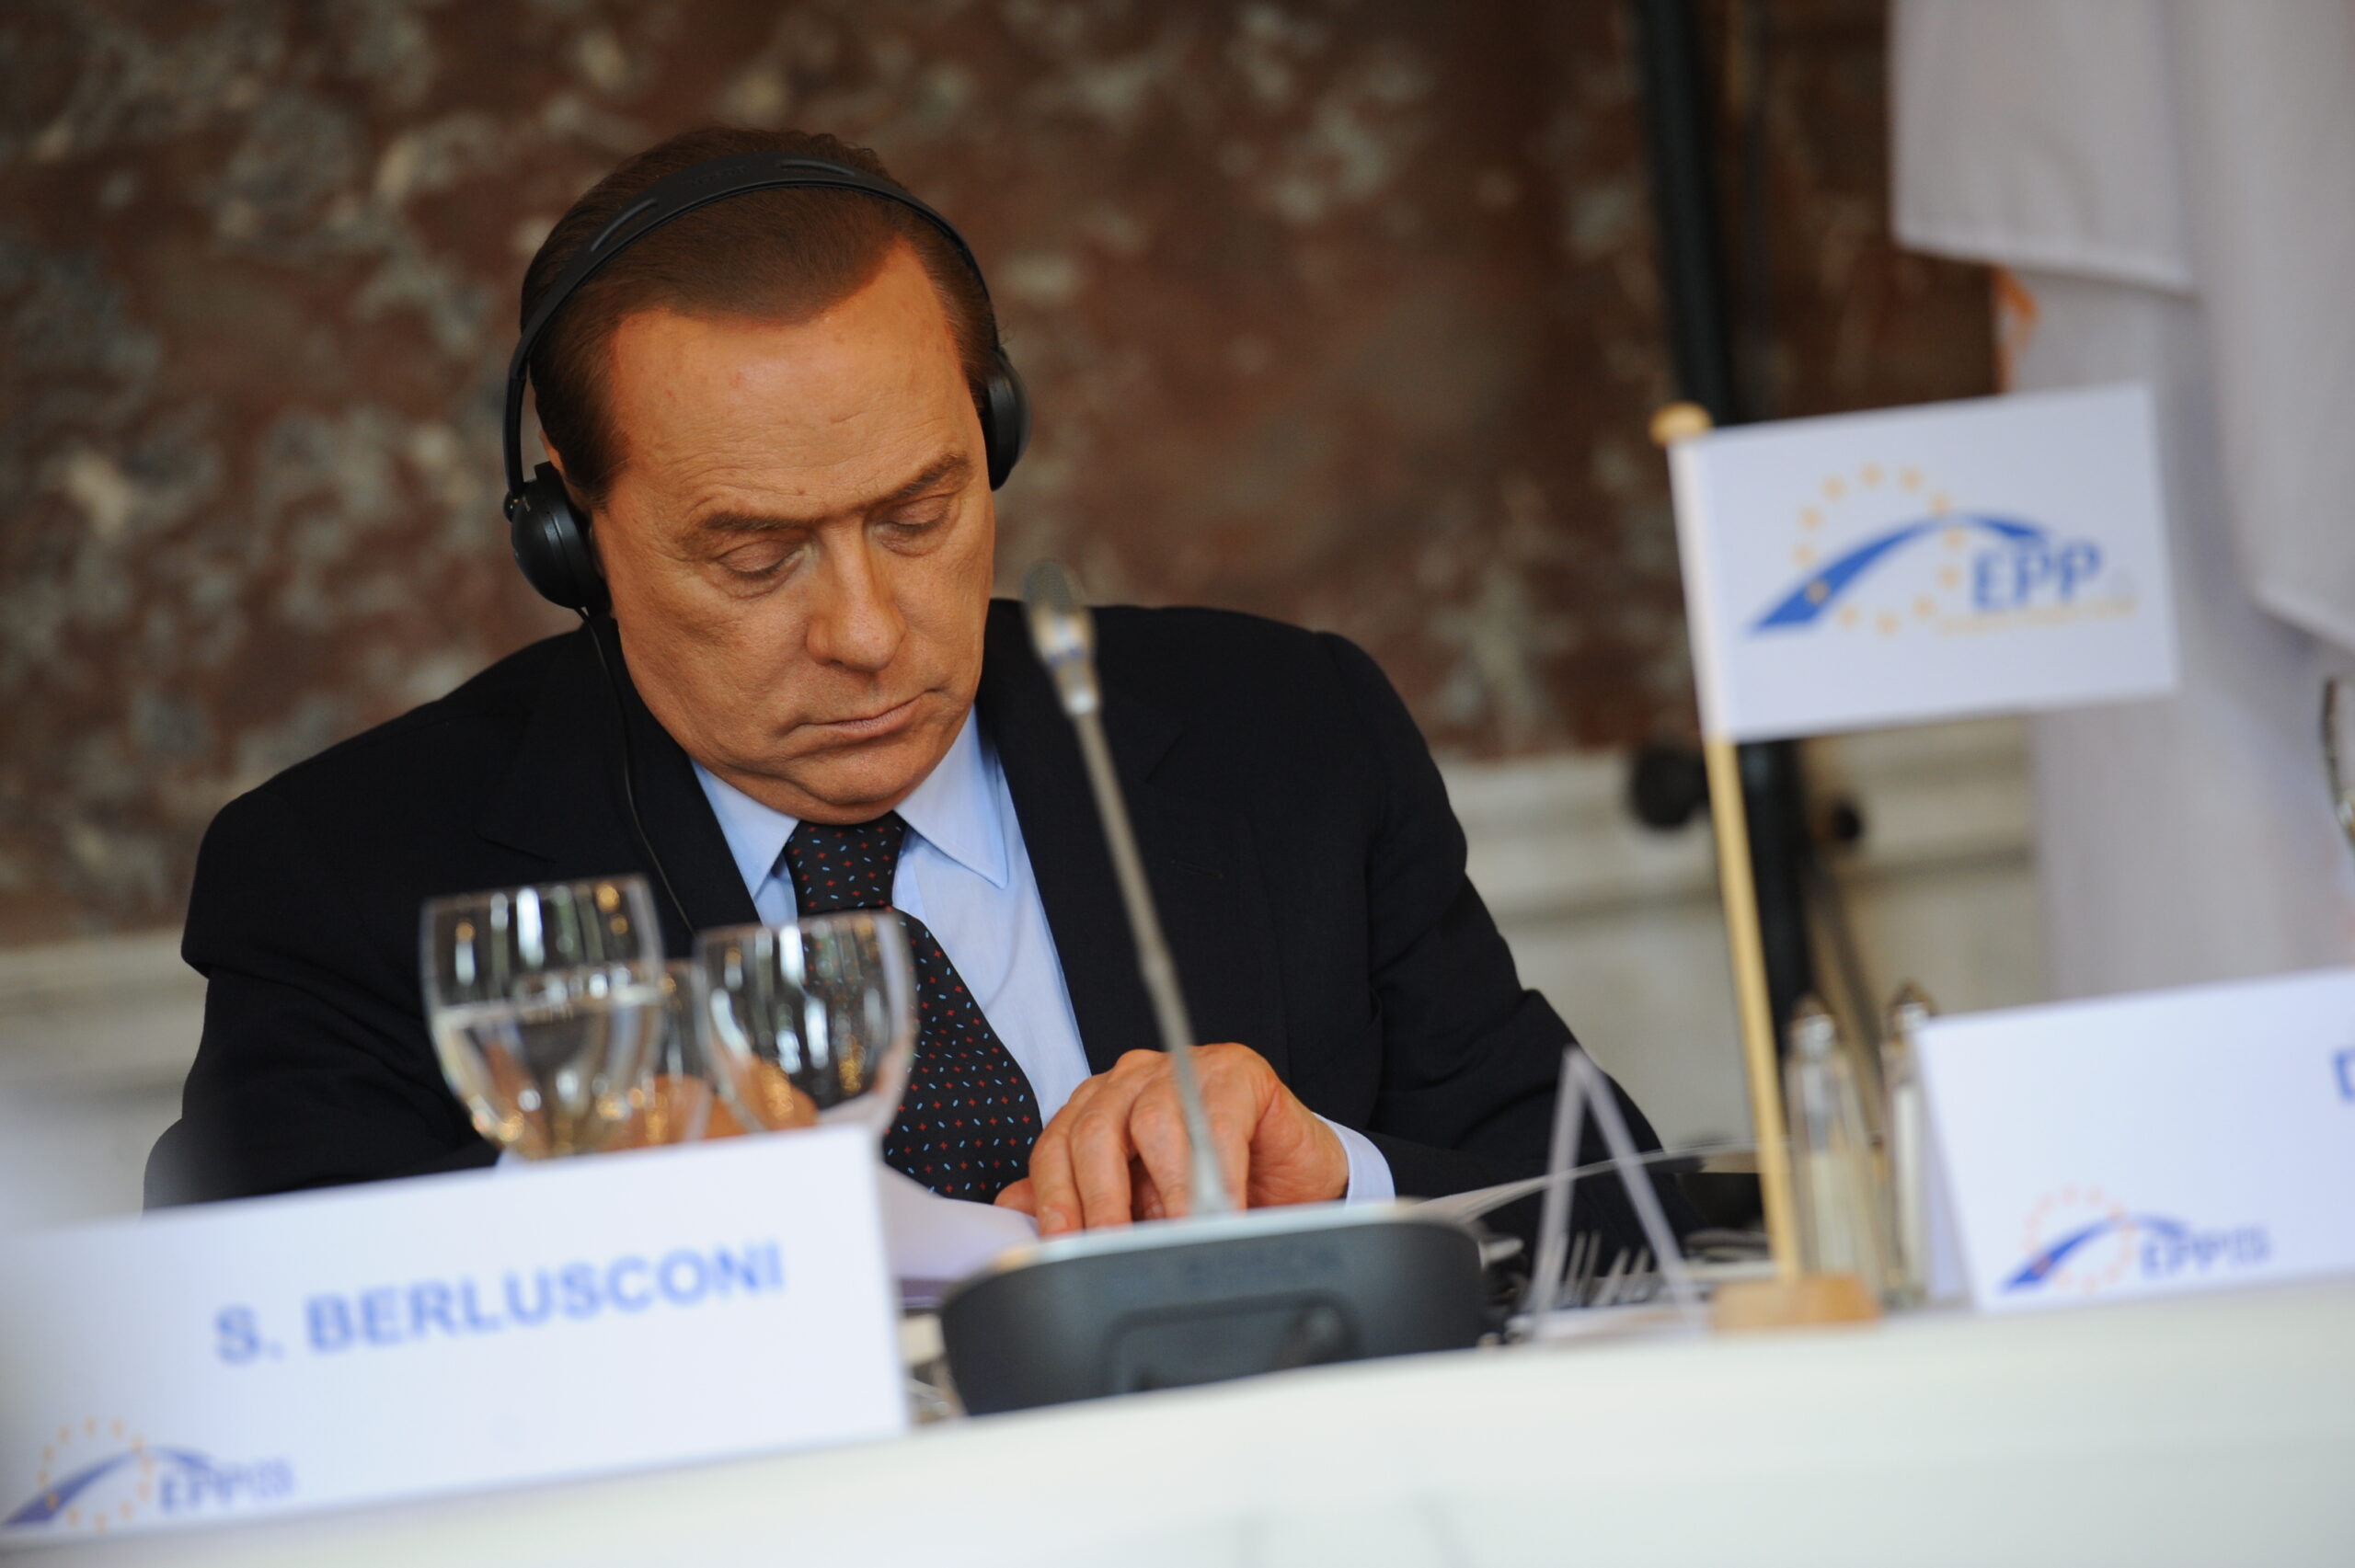  don Silvio a șocat pe toată lumea cu alegerea făcută! / Cine primește 100 de milioane de euro cadou